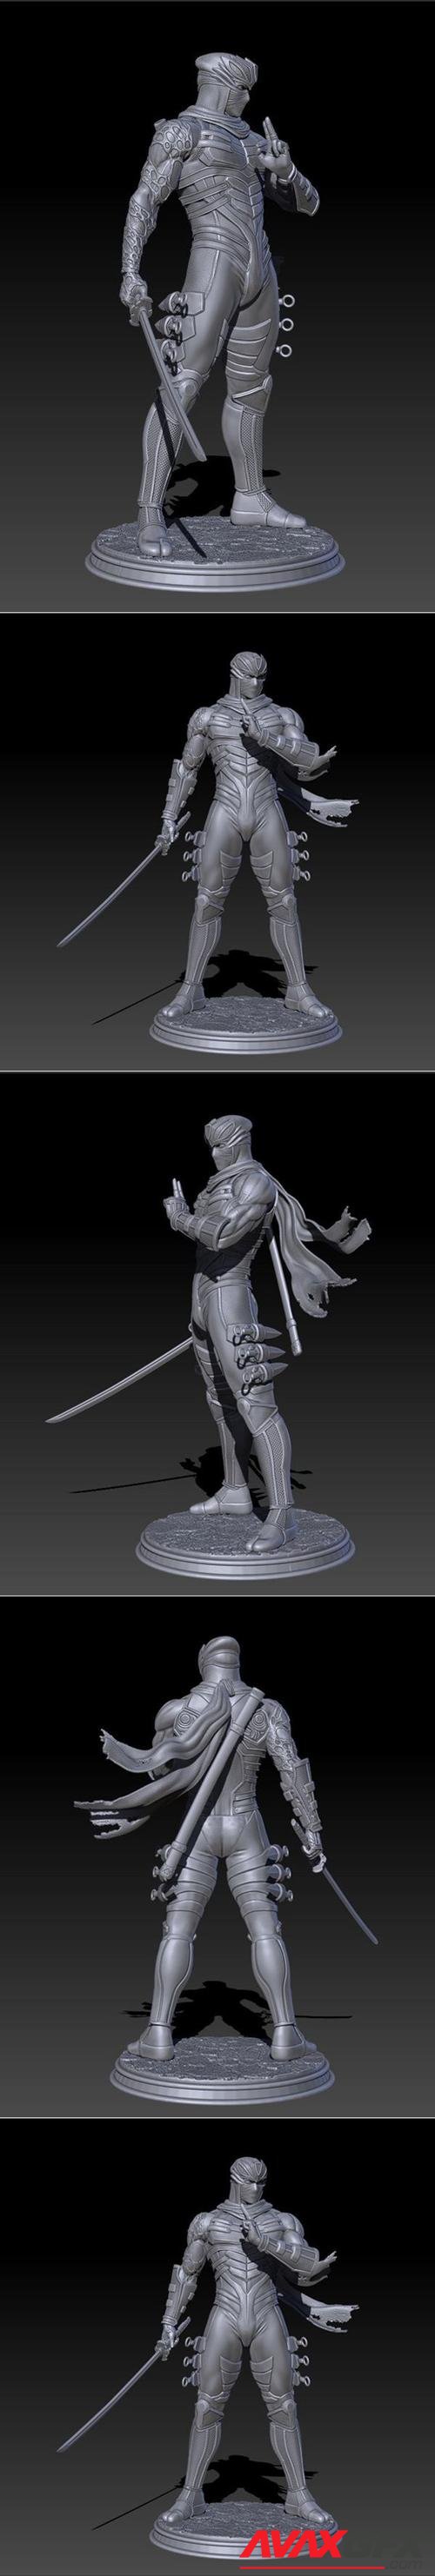 Ryu Hayabusa – 3D Print